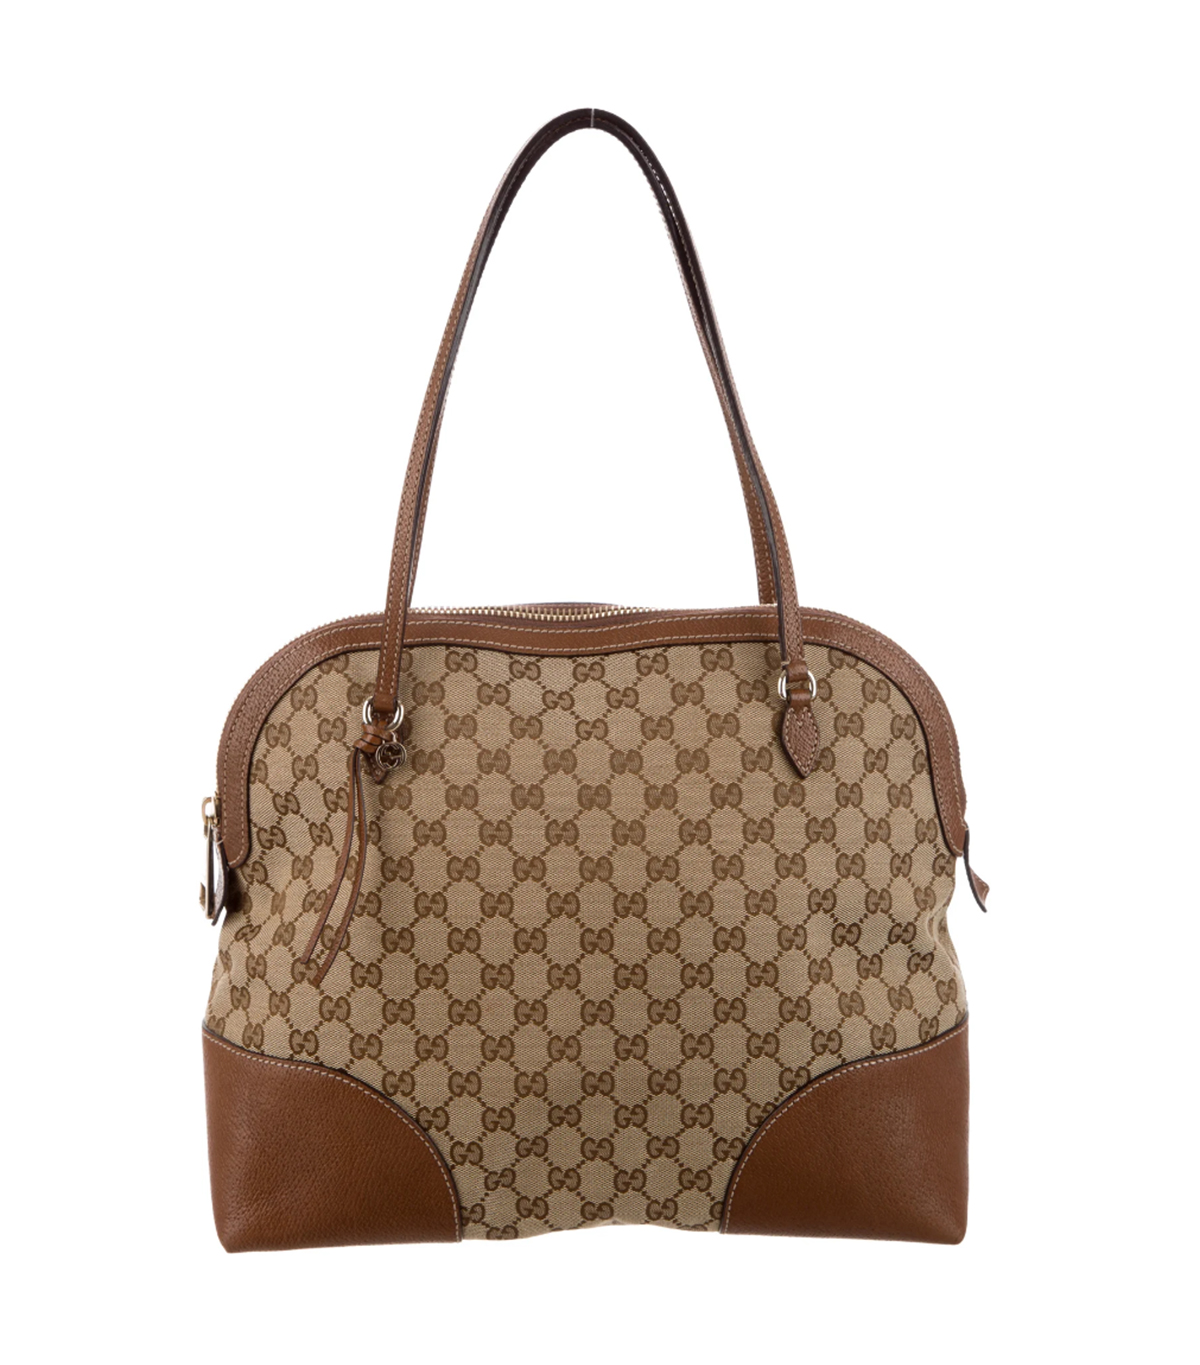 22 Classic Gucci Handbags Under $1000